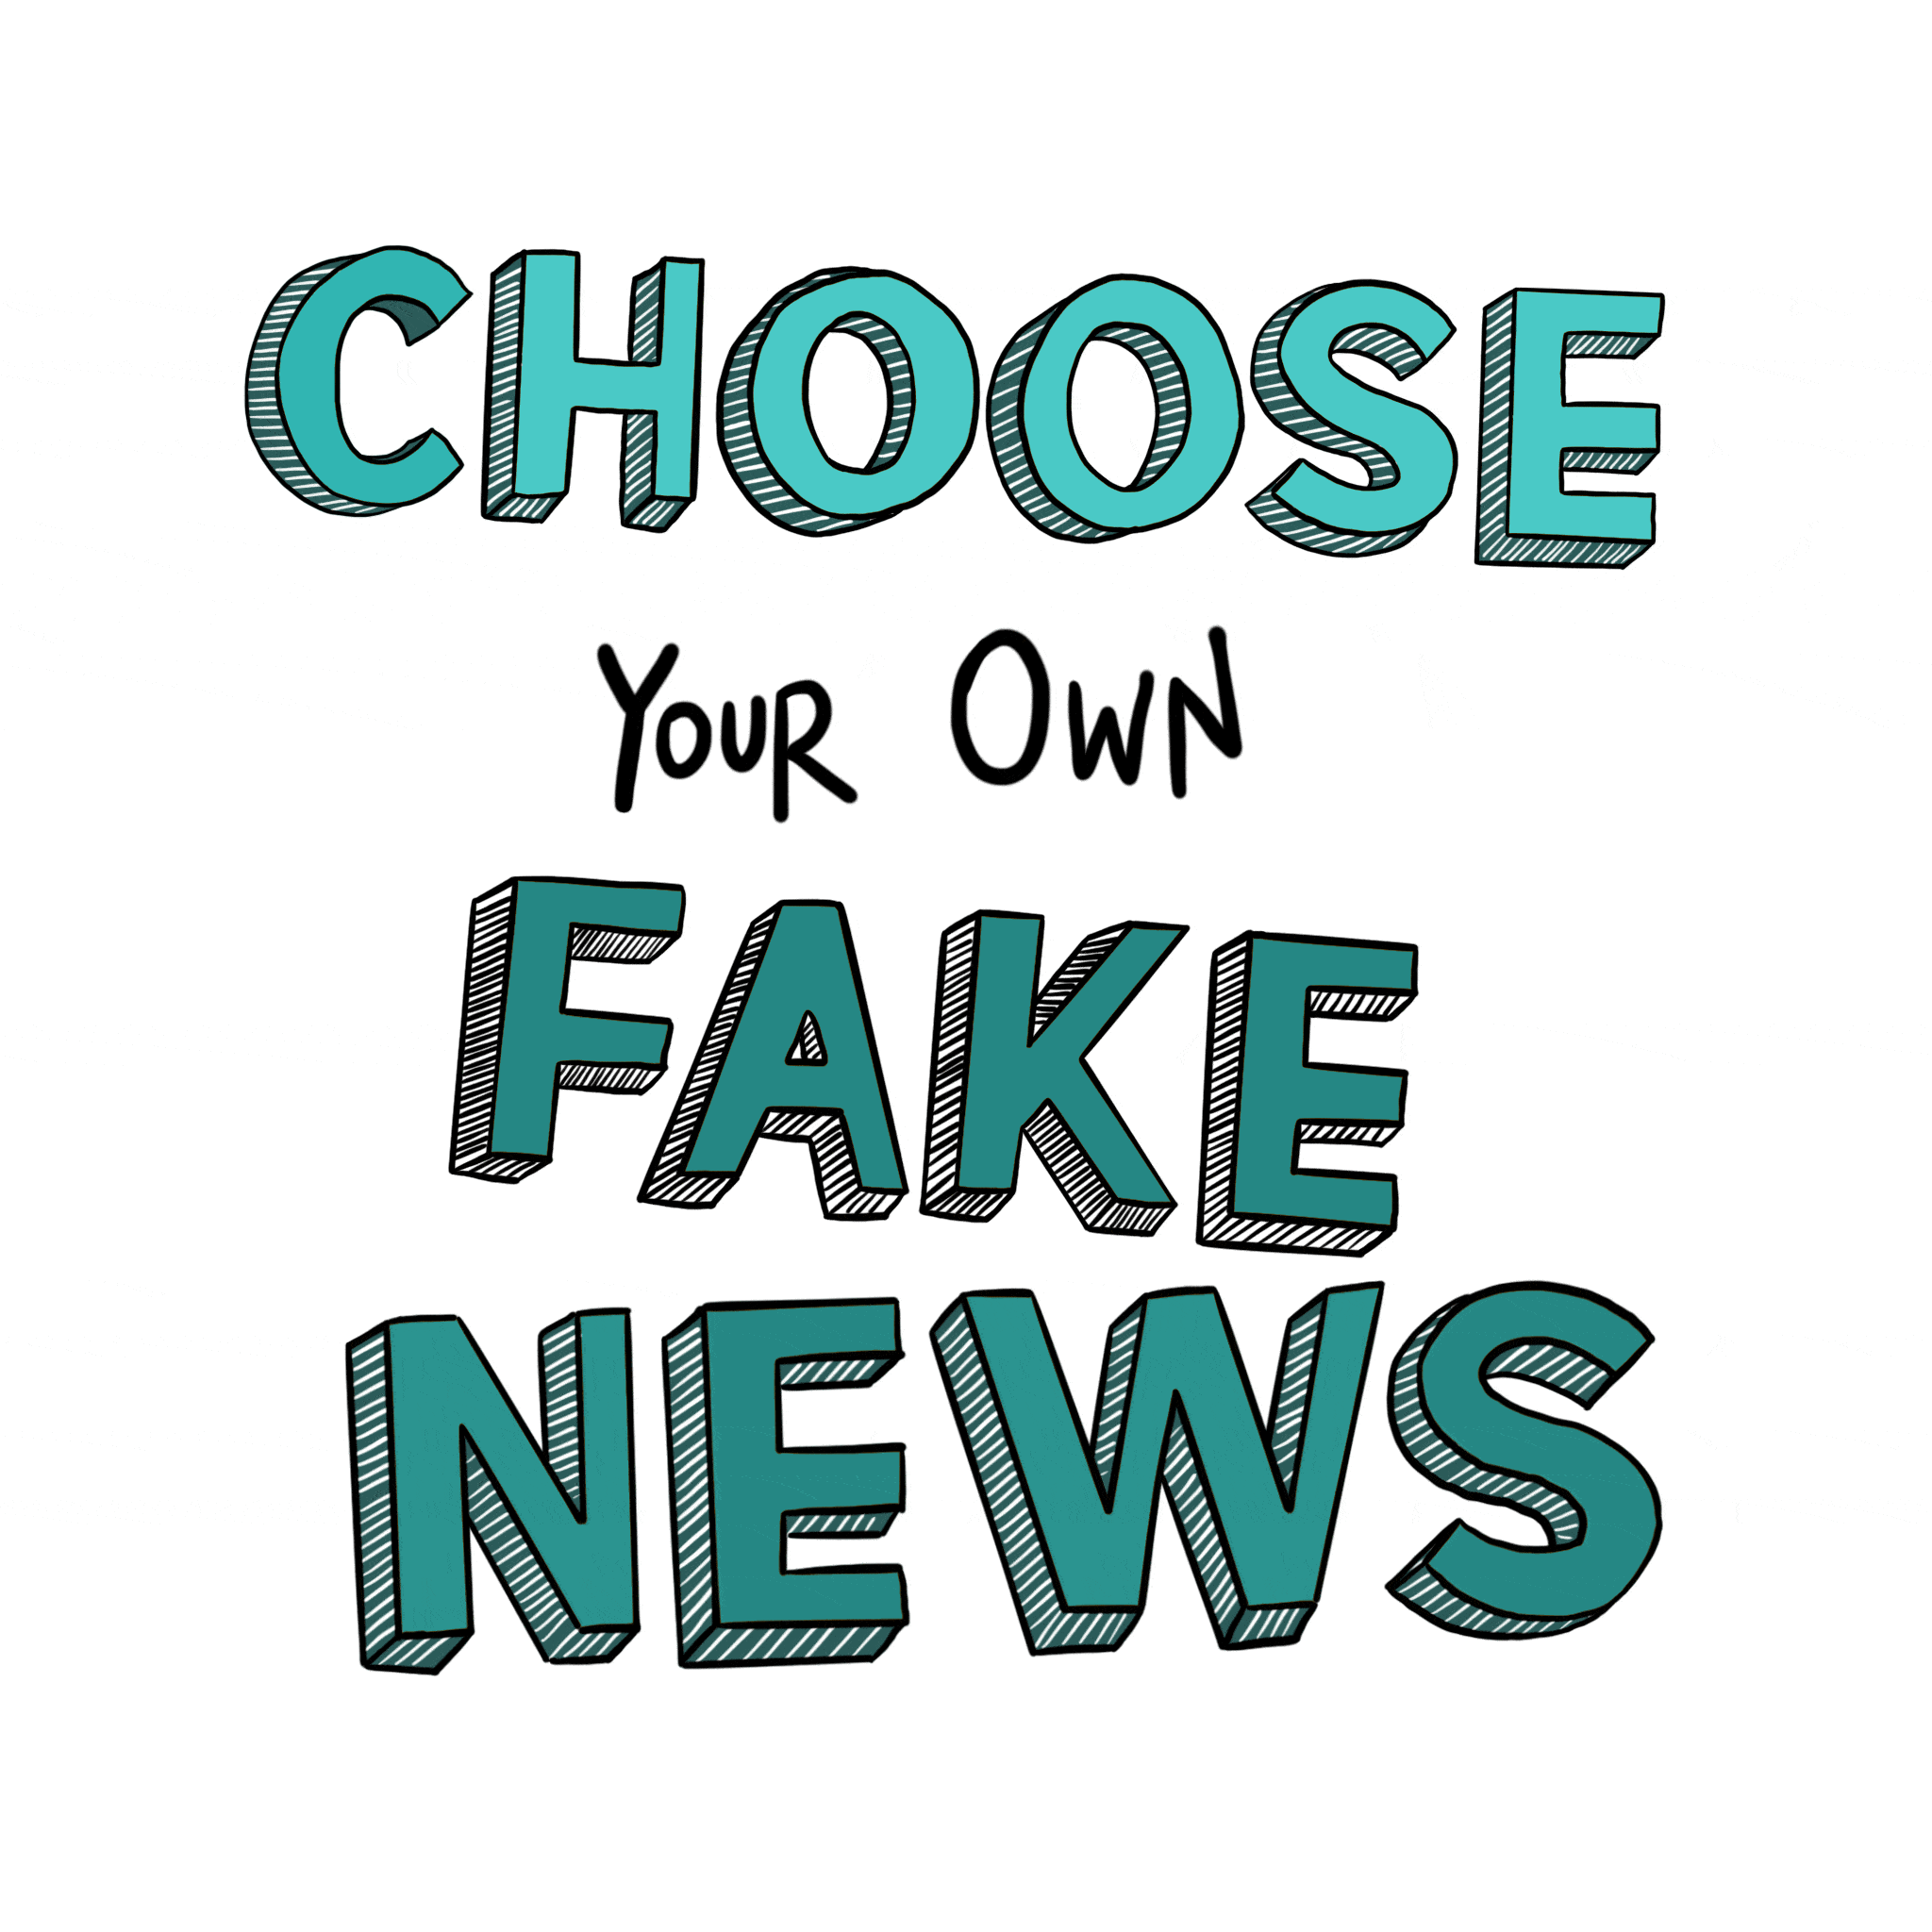 Bad News - Play the fake news game!